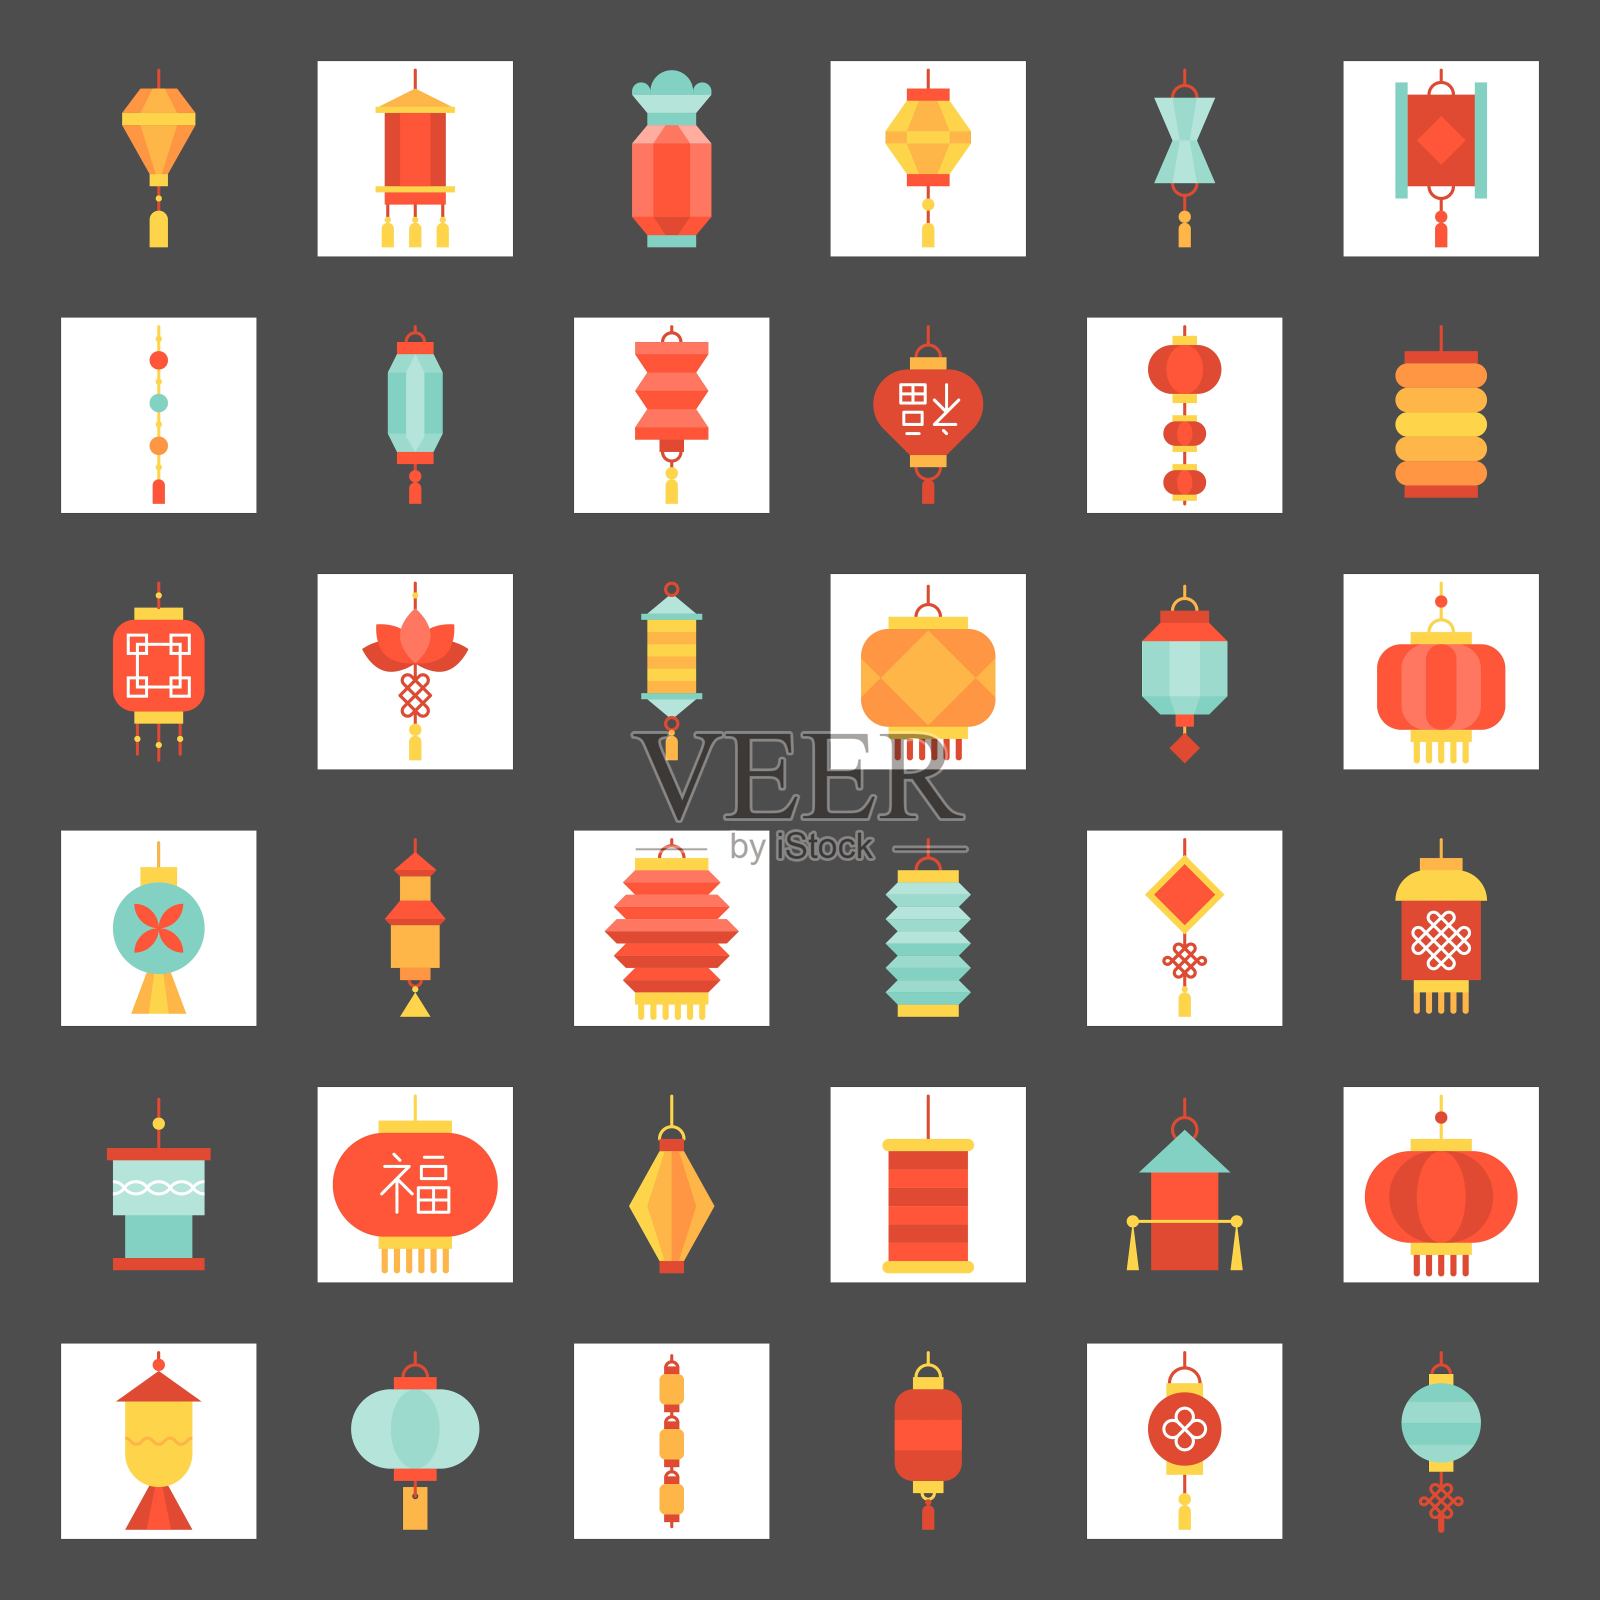 各种风格的中国新年灯笼插画图片素材